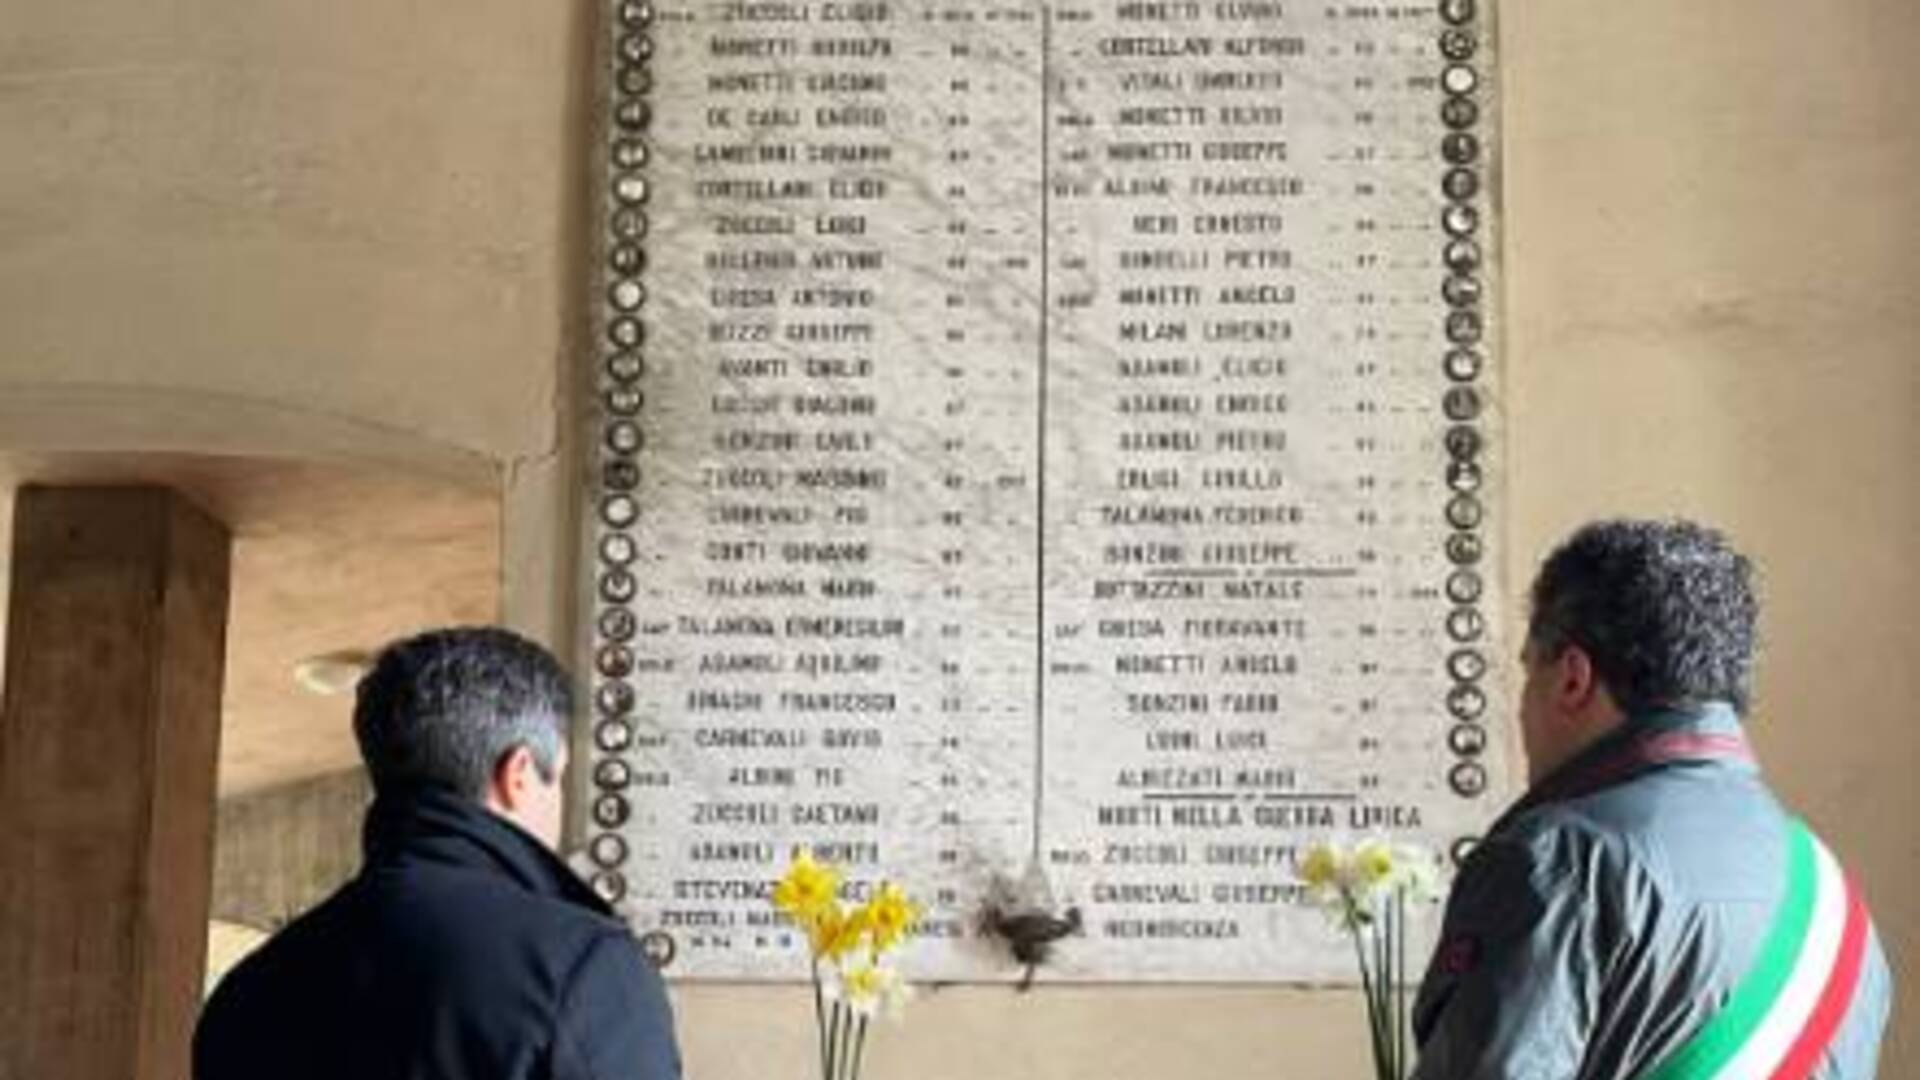 Vedano Olona commemora le vittime del covid: bandiere a mezz’asta e deposizione dei fiori